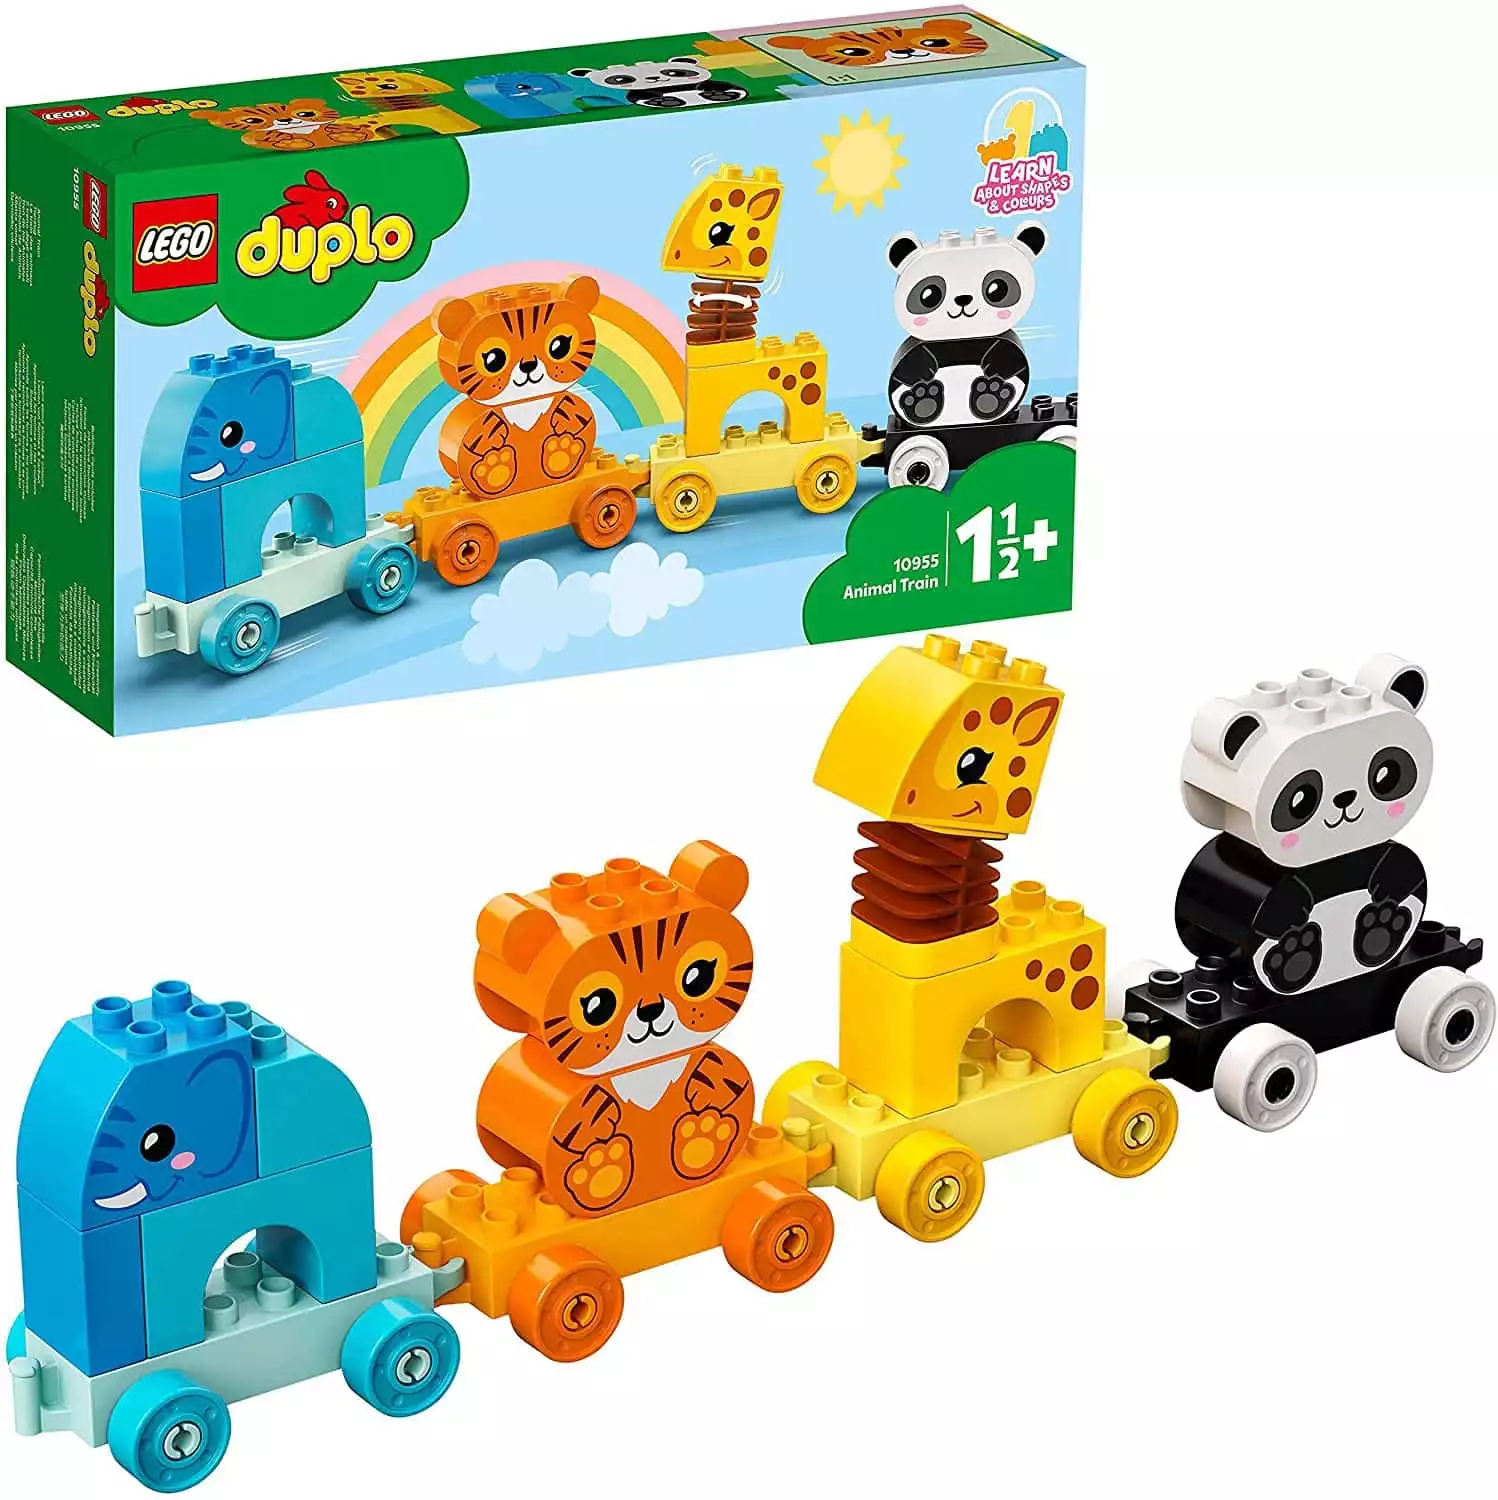 Lego Duplo Zug mit Tieren